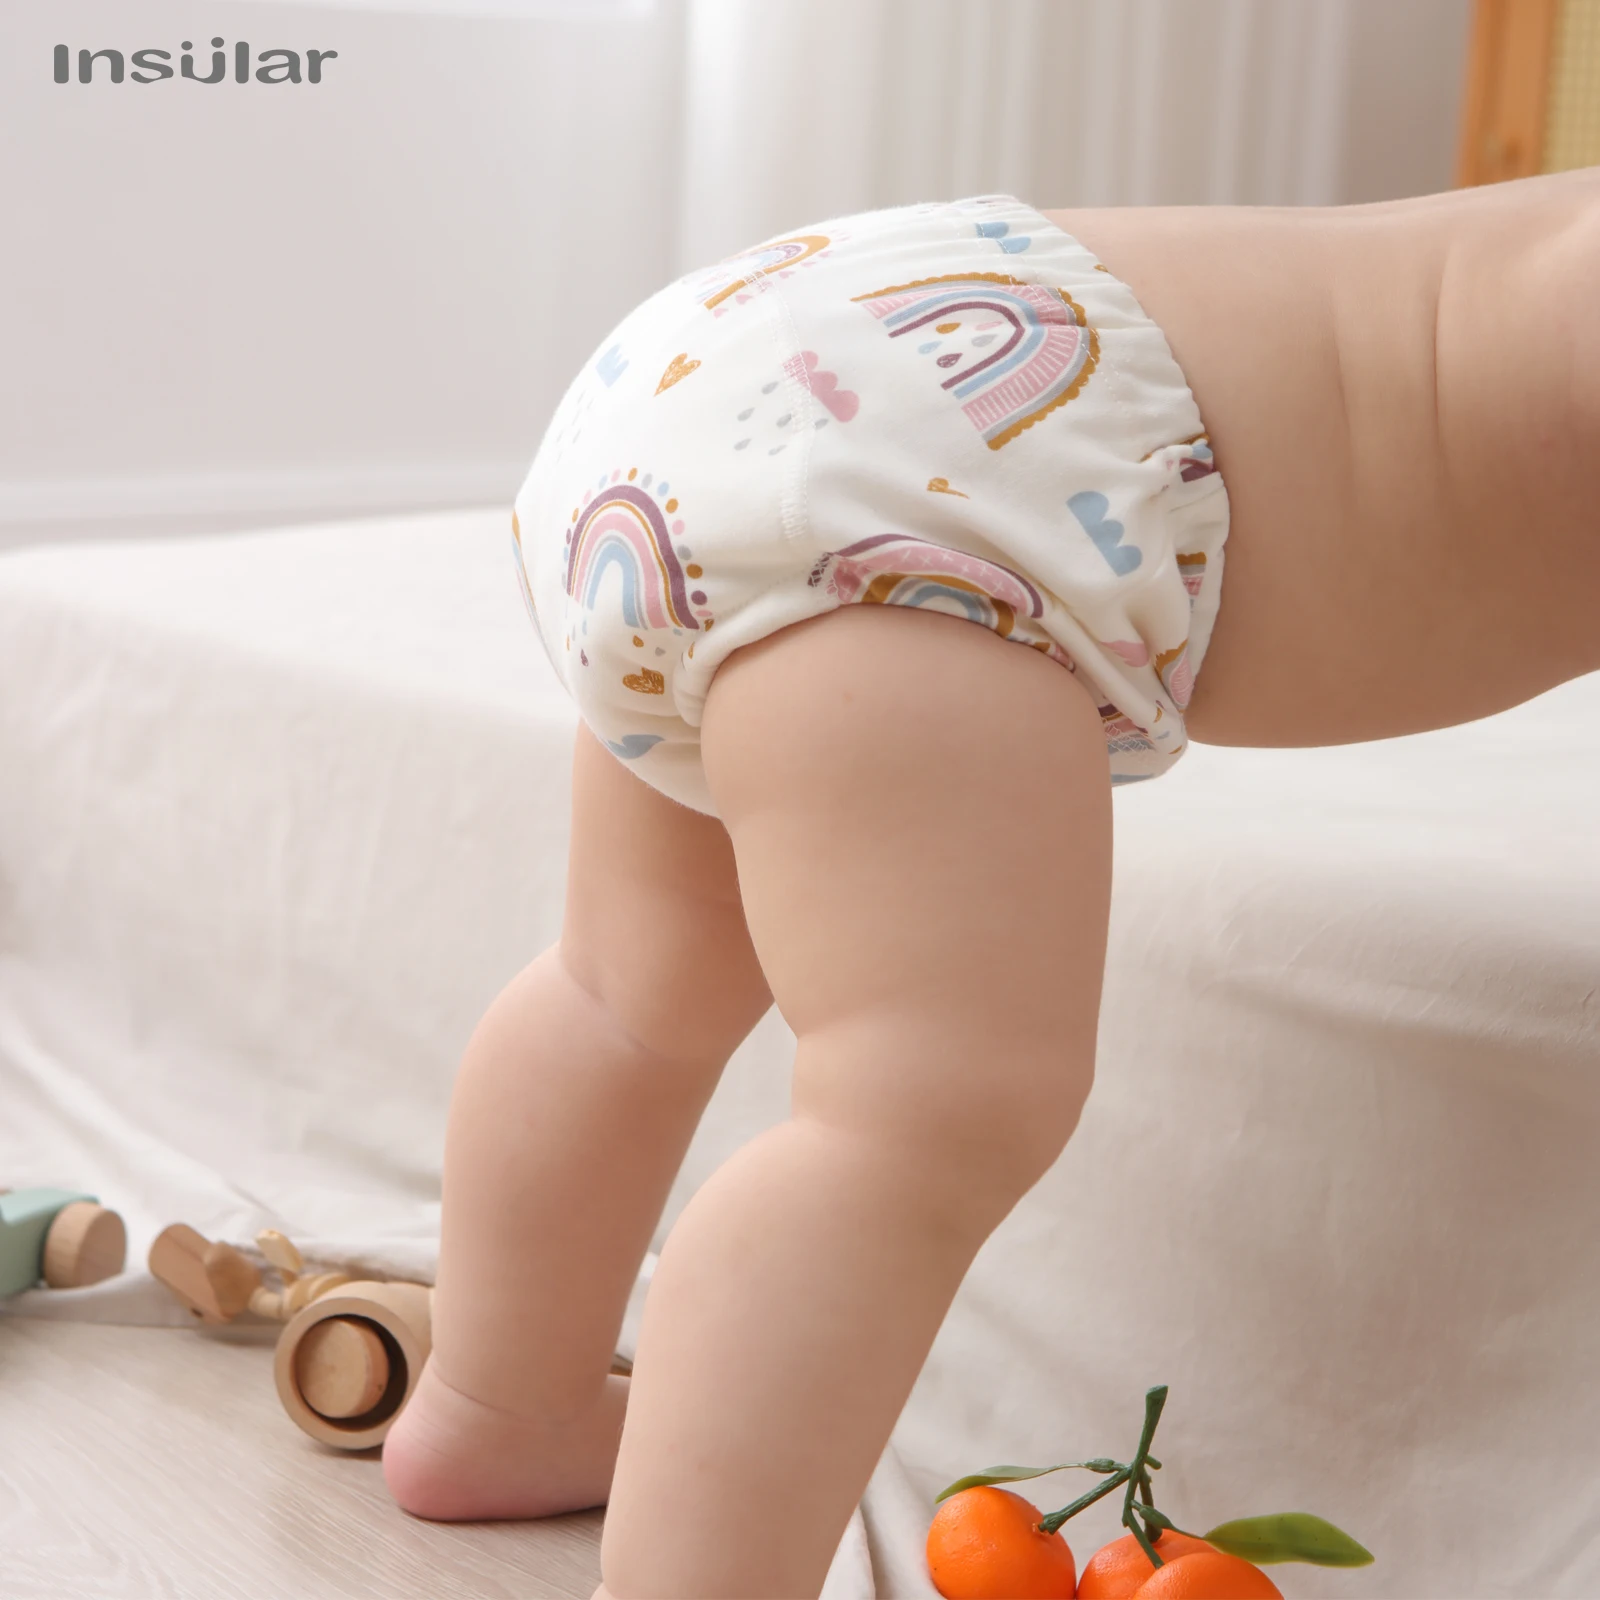 Baby Cotton Training Pants, calcinha impermeável Fraldas de pano Toolder reutilizável Roupa interior do bebê, 6 camadas, 3pcs por lote